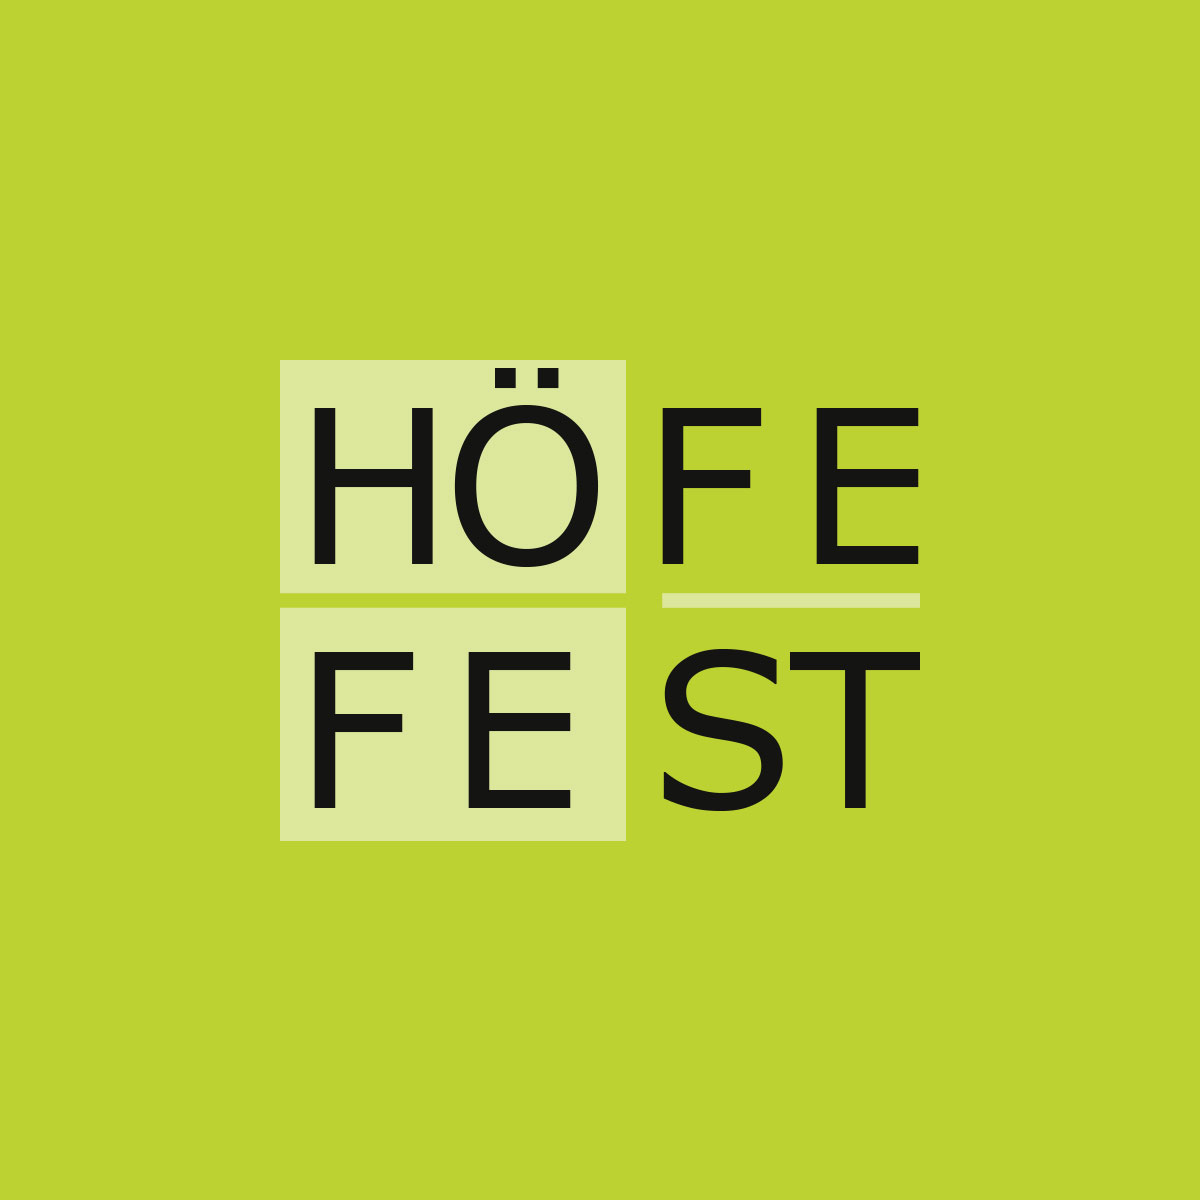 HoefeFest